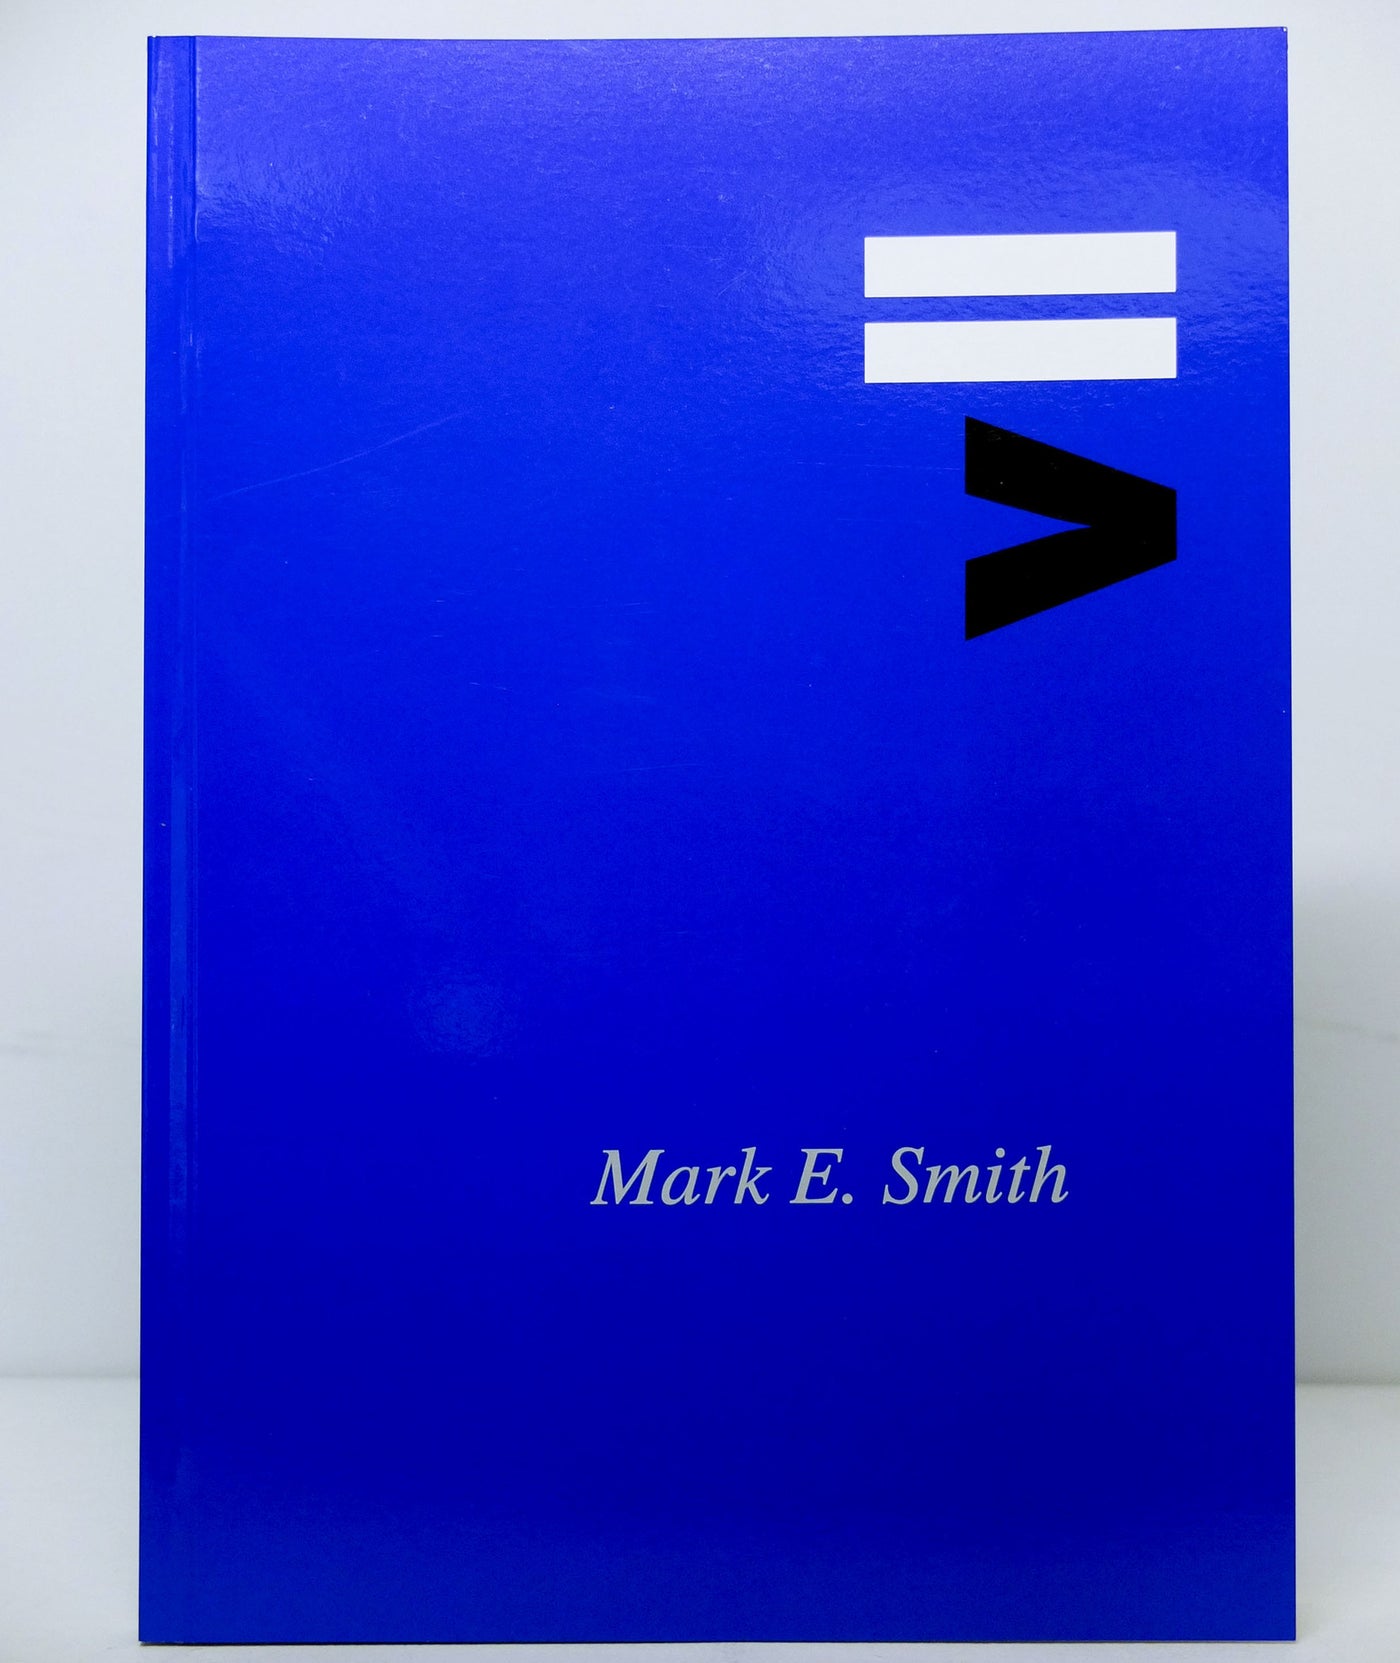 Donlon Books Vii By Mark E Smith